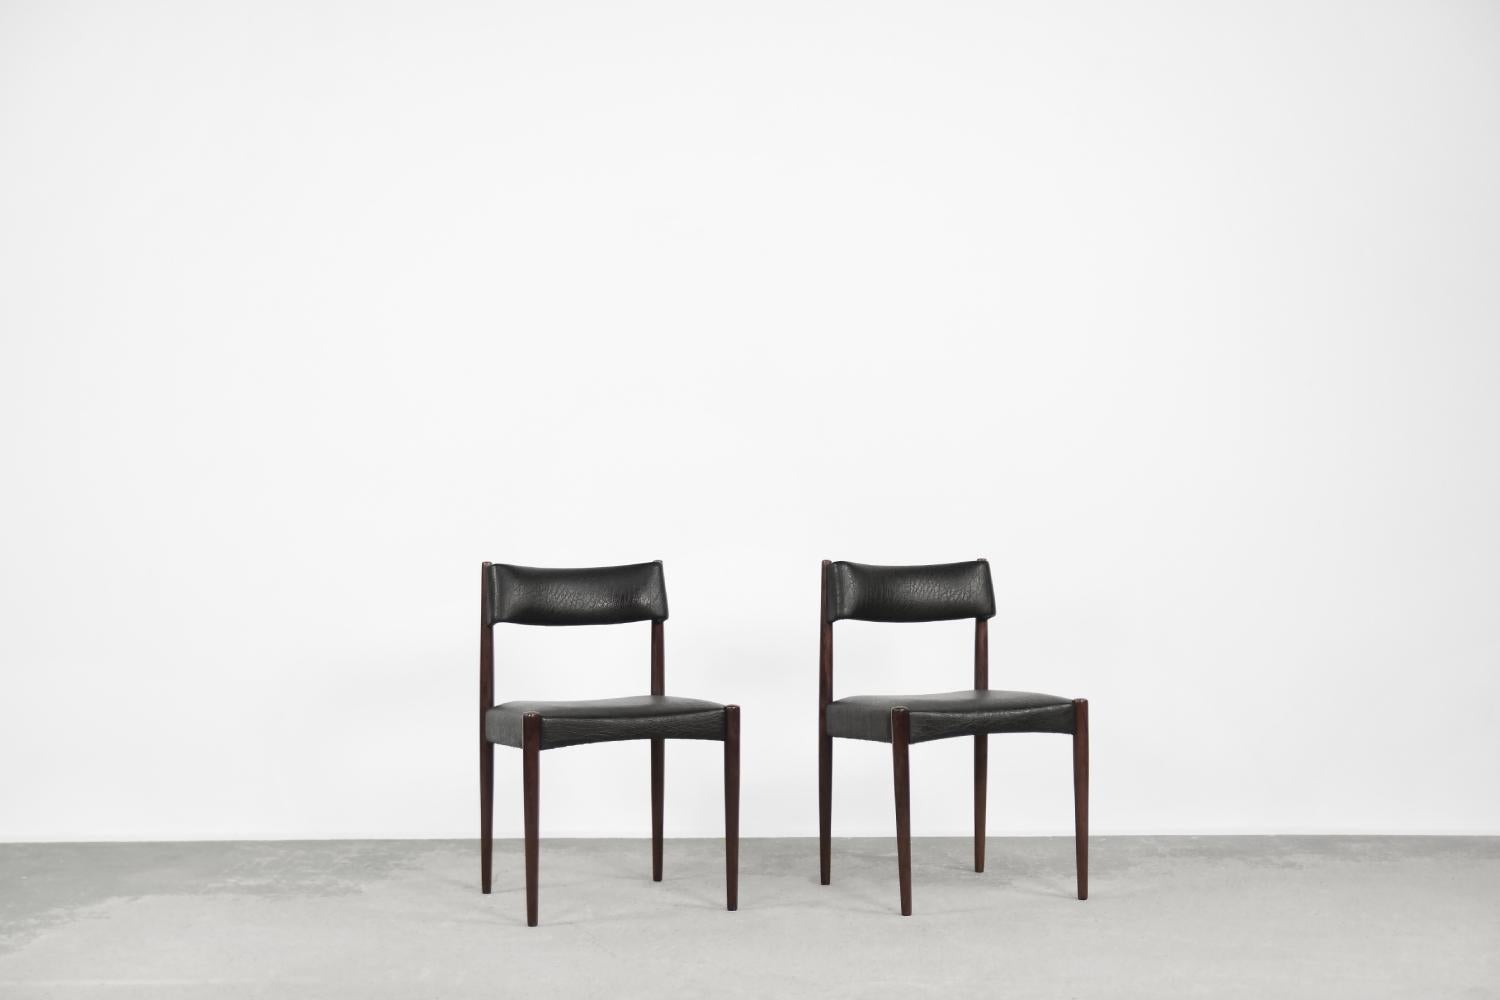 Dieses Set aus zwei eleganten Esszimmerstühlen wurde in den 1960er Jahren von Aksel Bender Madsen für die niederländische Manufaktur Bovenkamp entworfen. Madsen ist berühmt für seine exquisite Handwerkskunst mit organischen Formen aus Holz. Diese